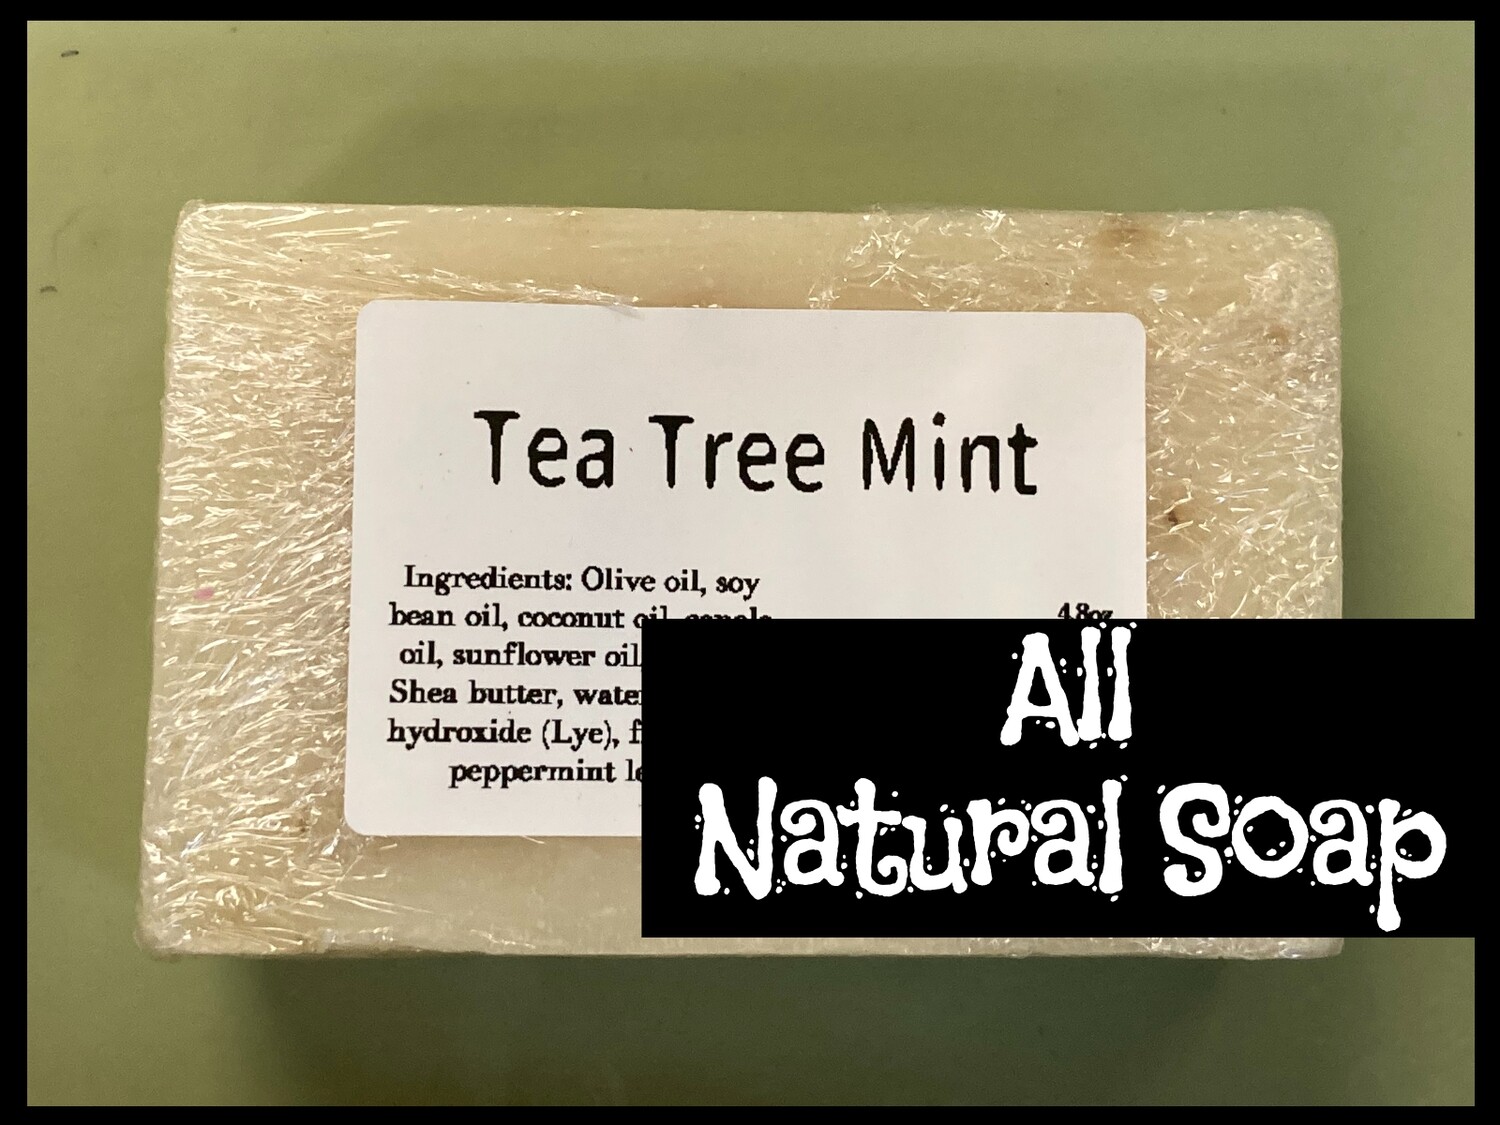 Tea tree mint